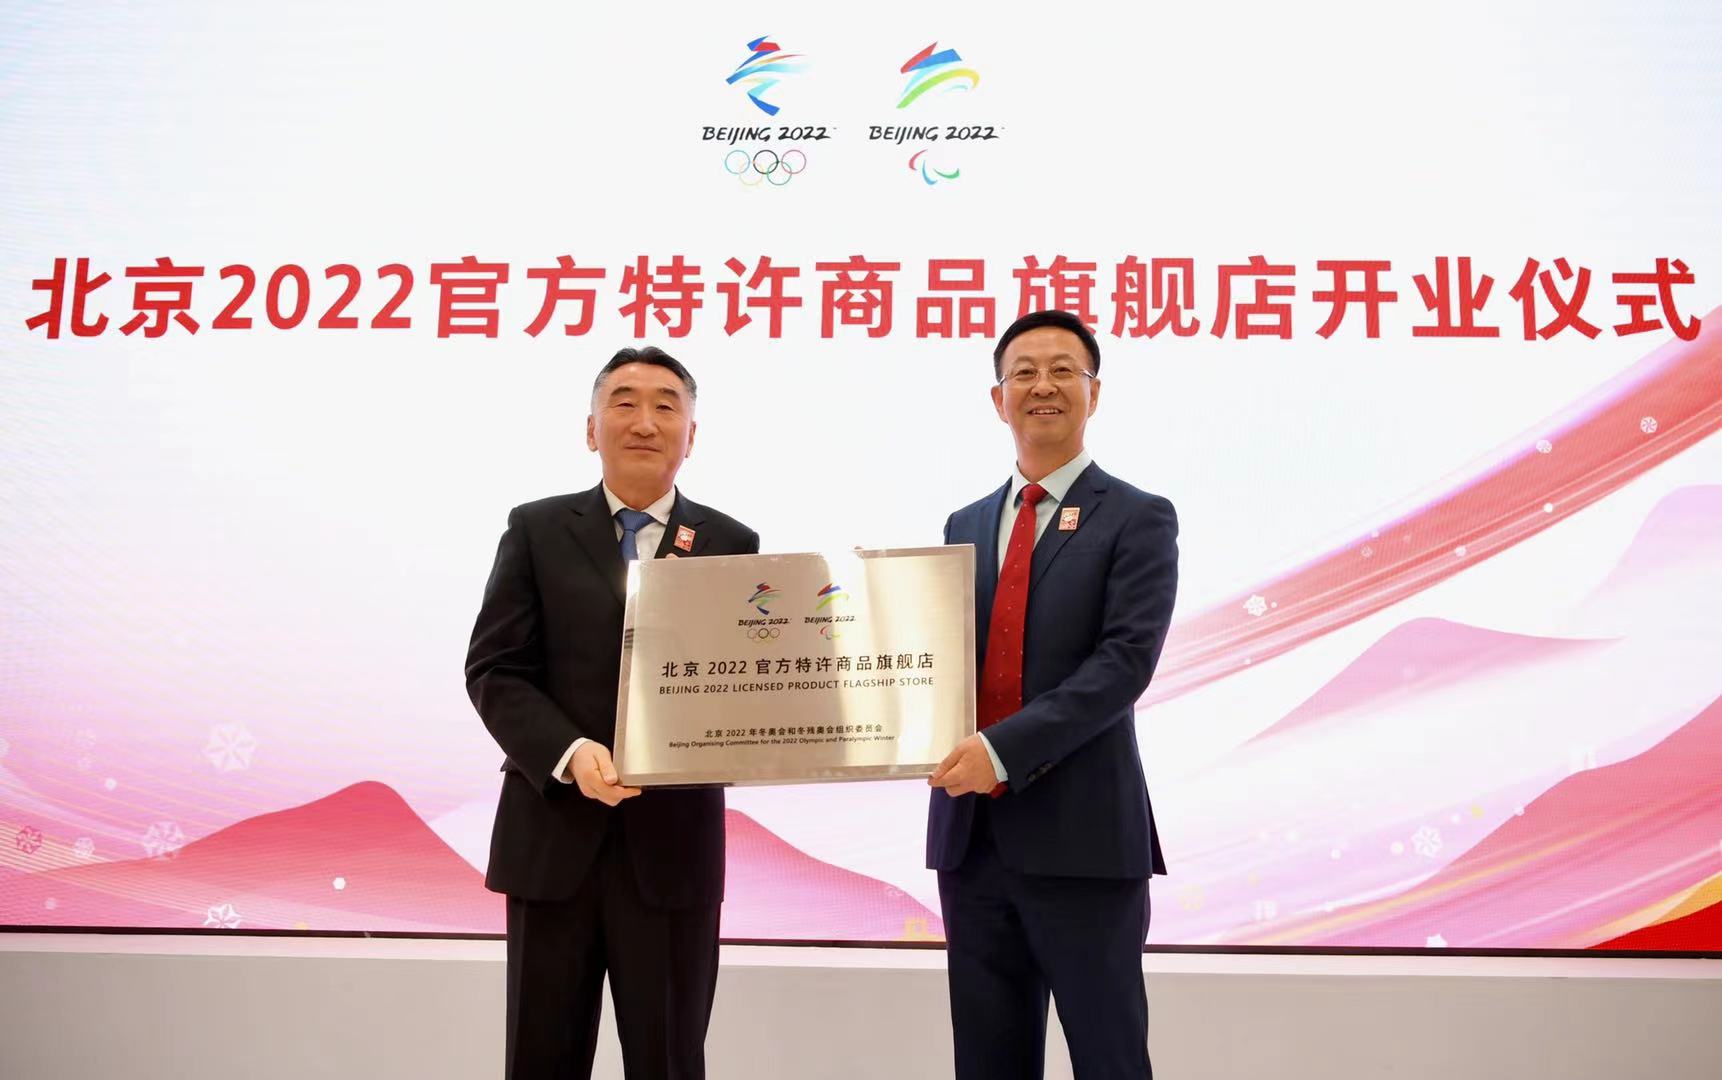 北京2022年冬奥会倒计时一周年：北京2022官方特许商品旗舰店开业